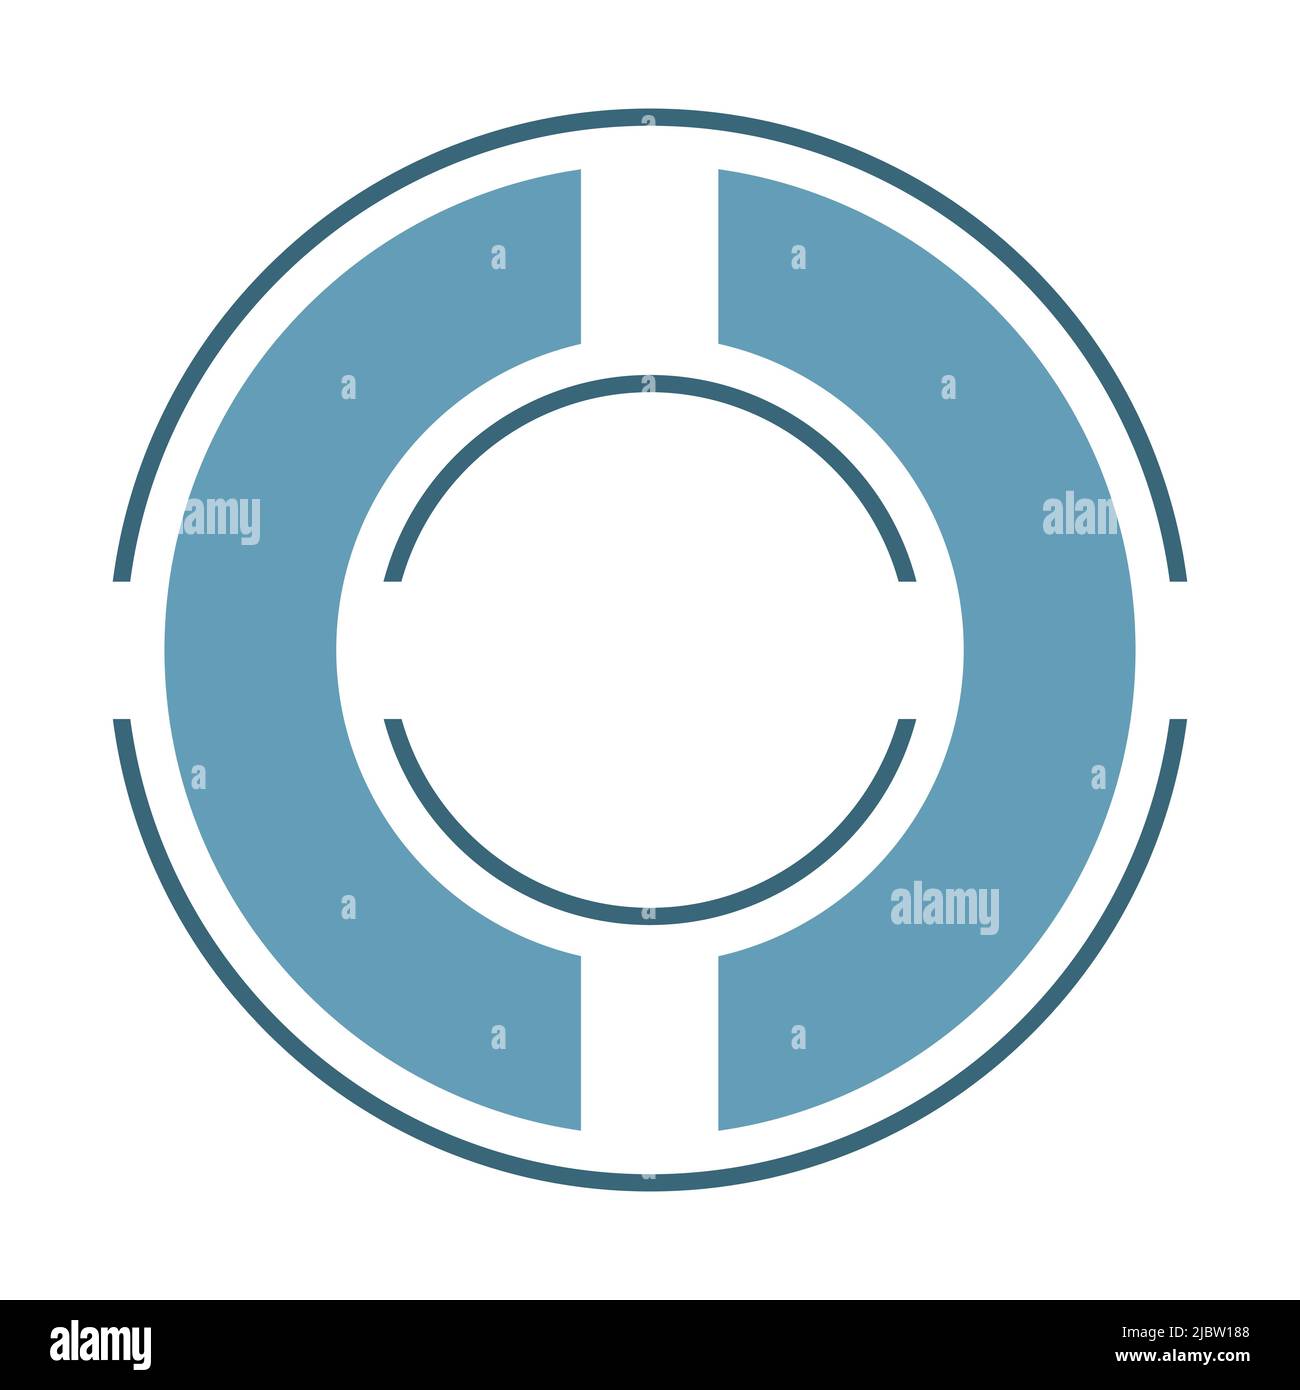 3 dünne und breite Kreise in Teile geschnitten, ein Ring im Inneren des anderen, Ziel-Symbol. Blautöne, flaches Design auf weißem Hintergrund Vektorgrafik. Stock Vektor